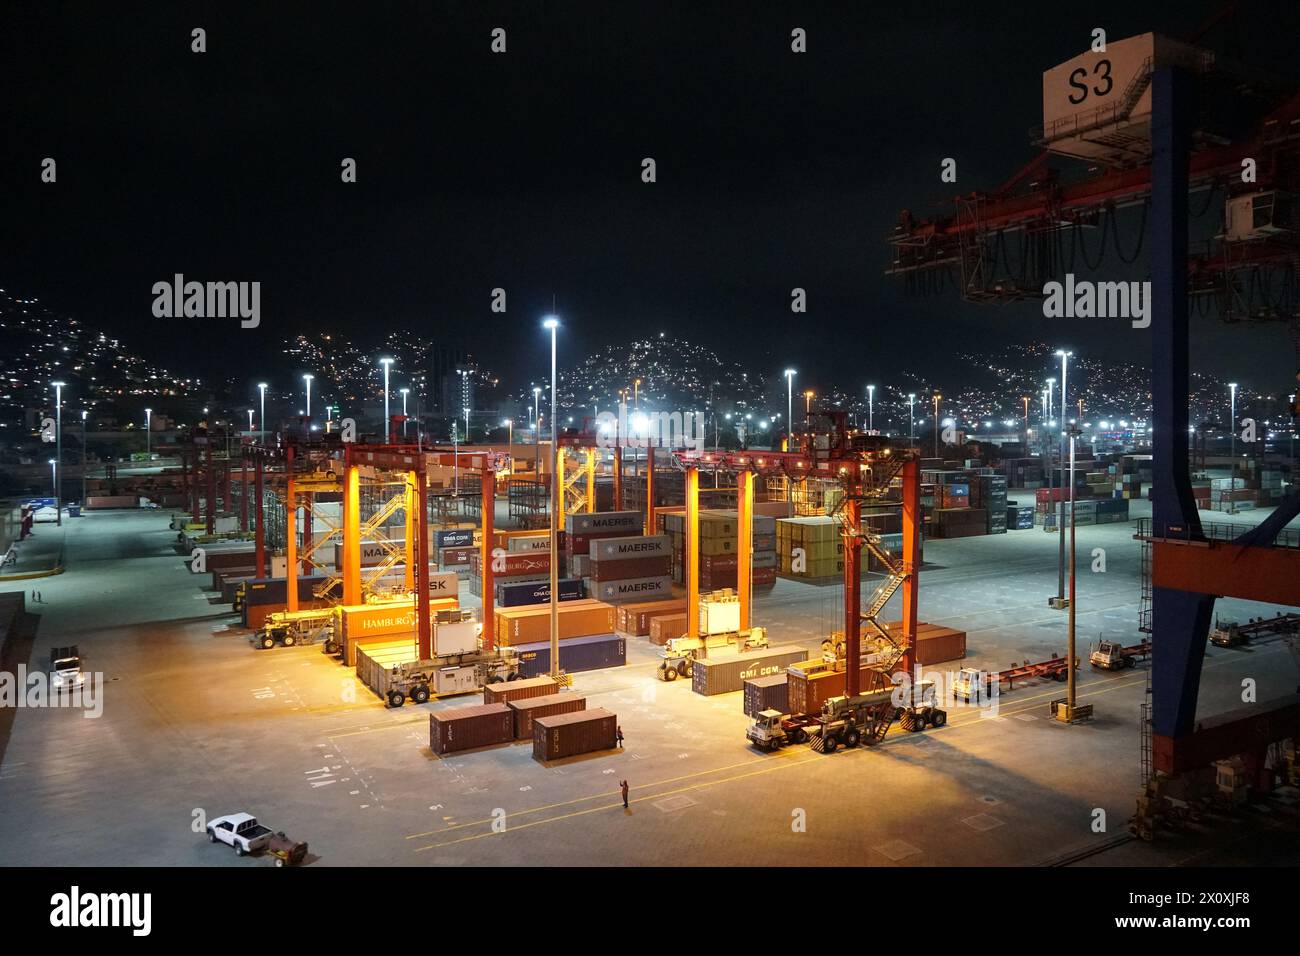 Moderner Containerterminal während des Nachthafens von La Guairá, beobachtet von einem Frachtschiff, das unter Portalkranen verankert ist. Stockfoto